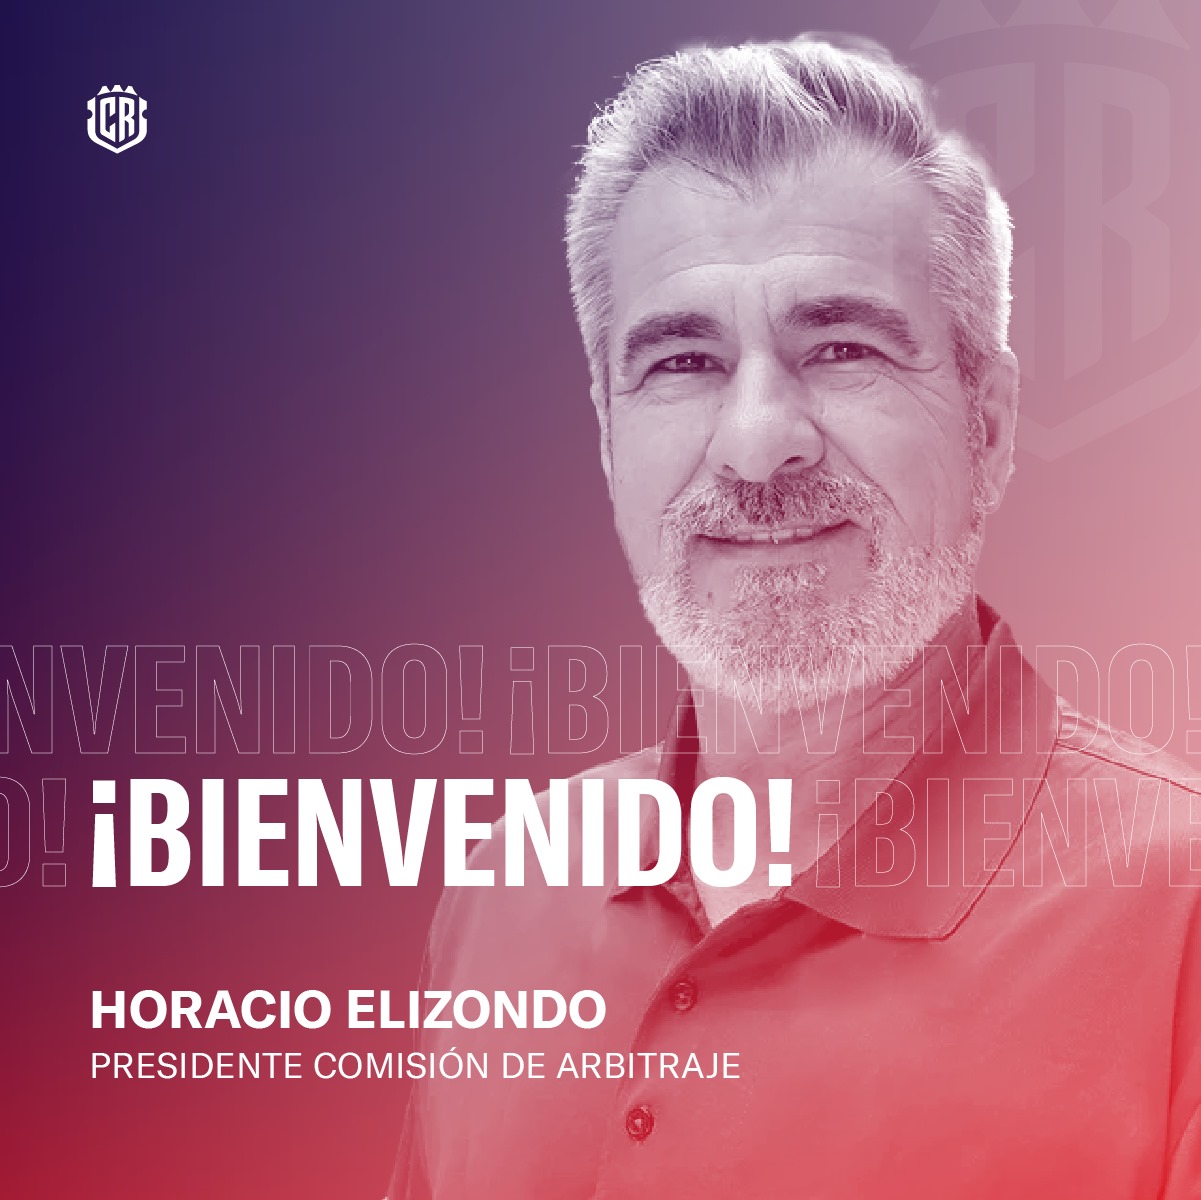 El argentino, Horacio Elizondo, es el nuevo presidente de la Comisión de Arbitraje.